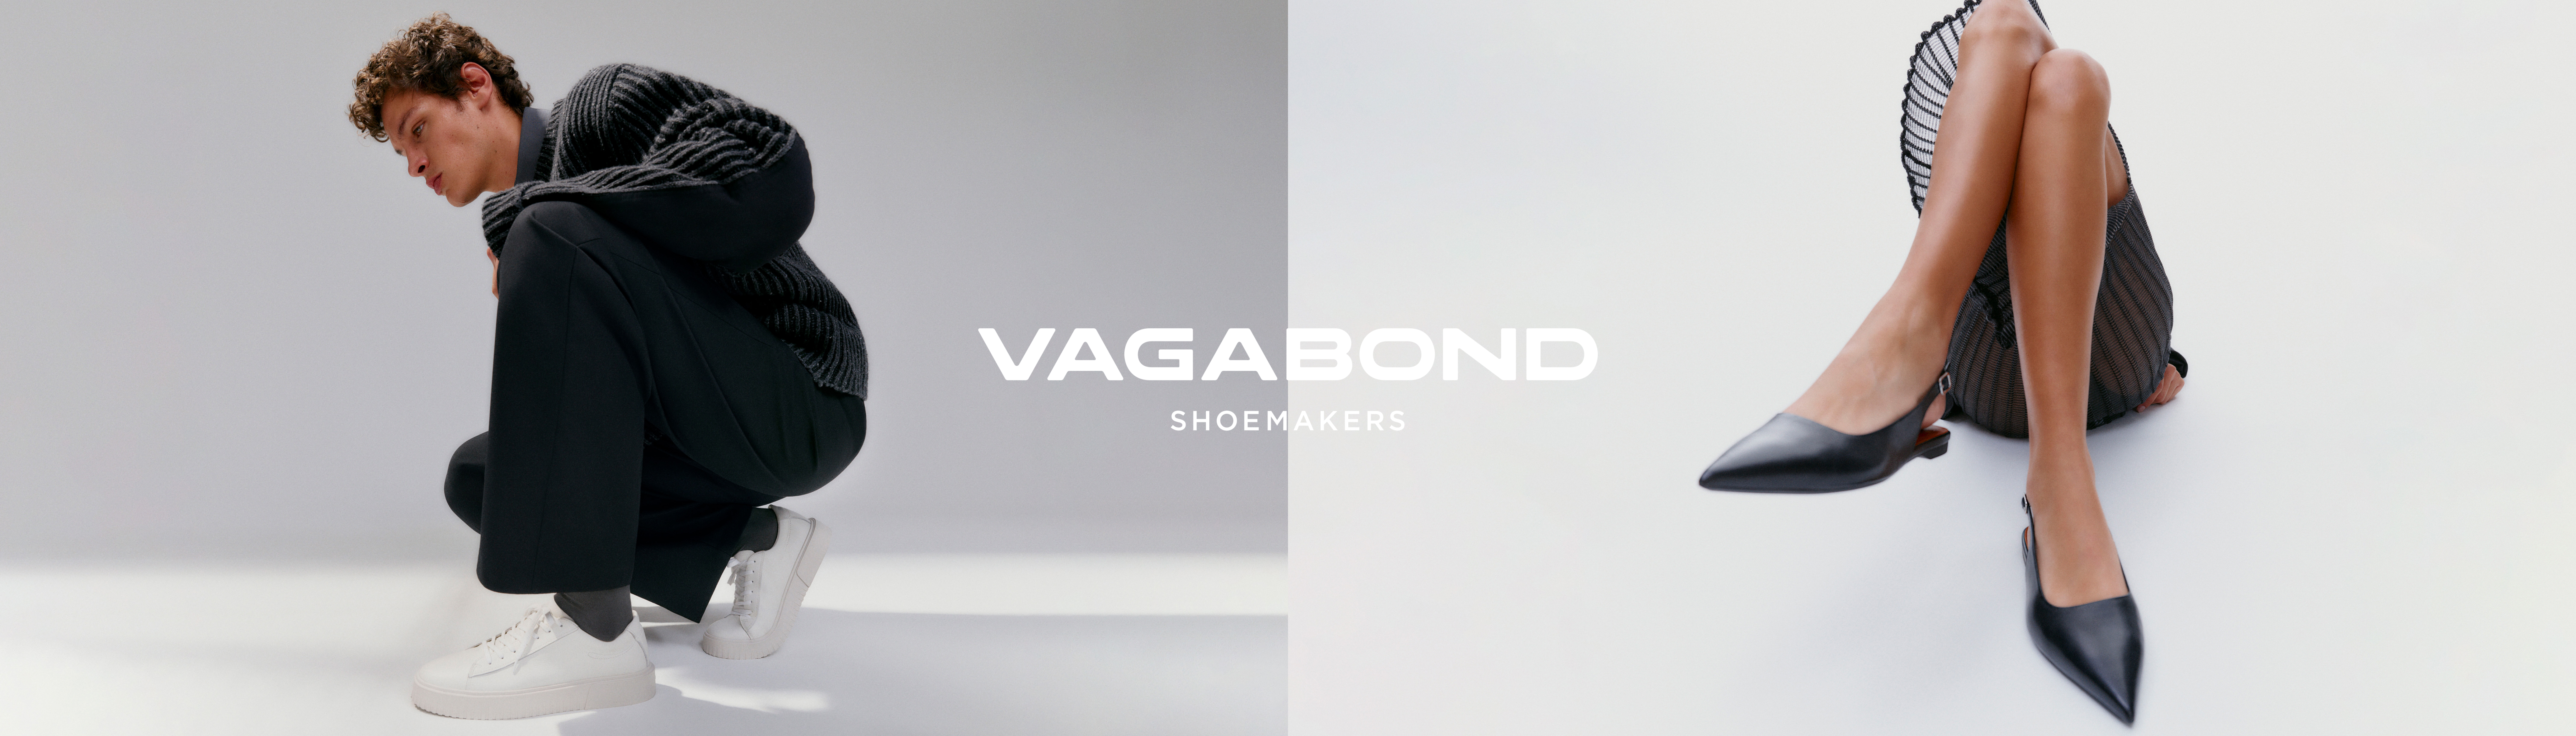 Vagabond brand page banner - 2023